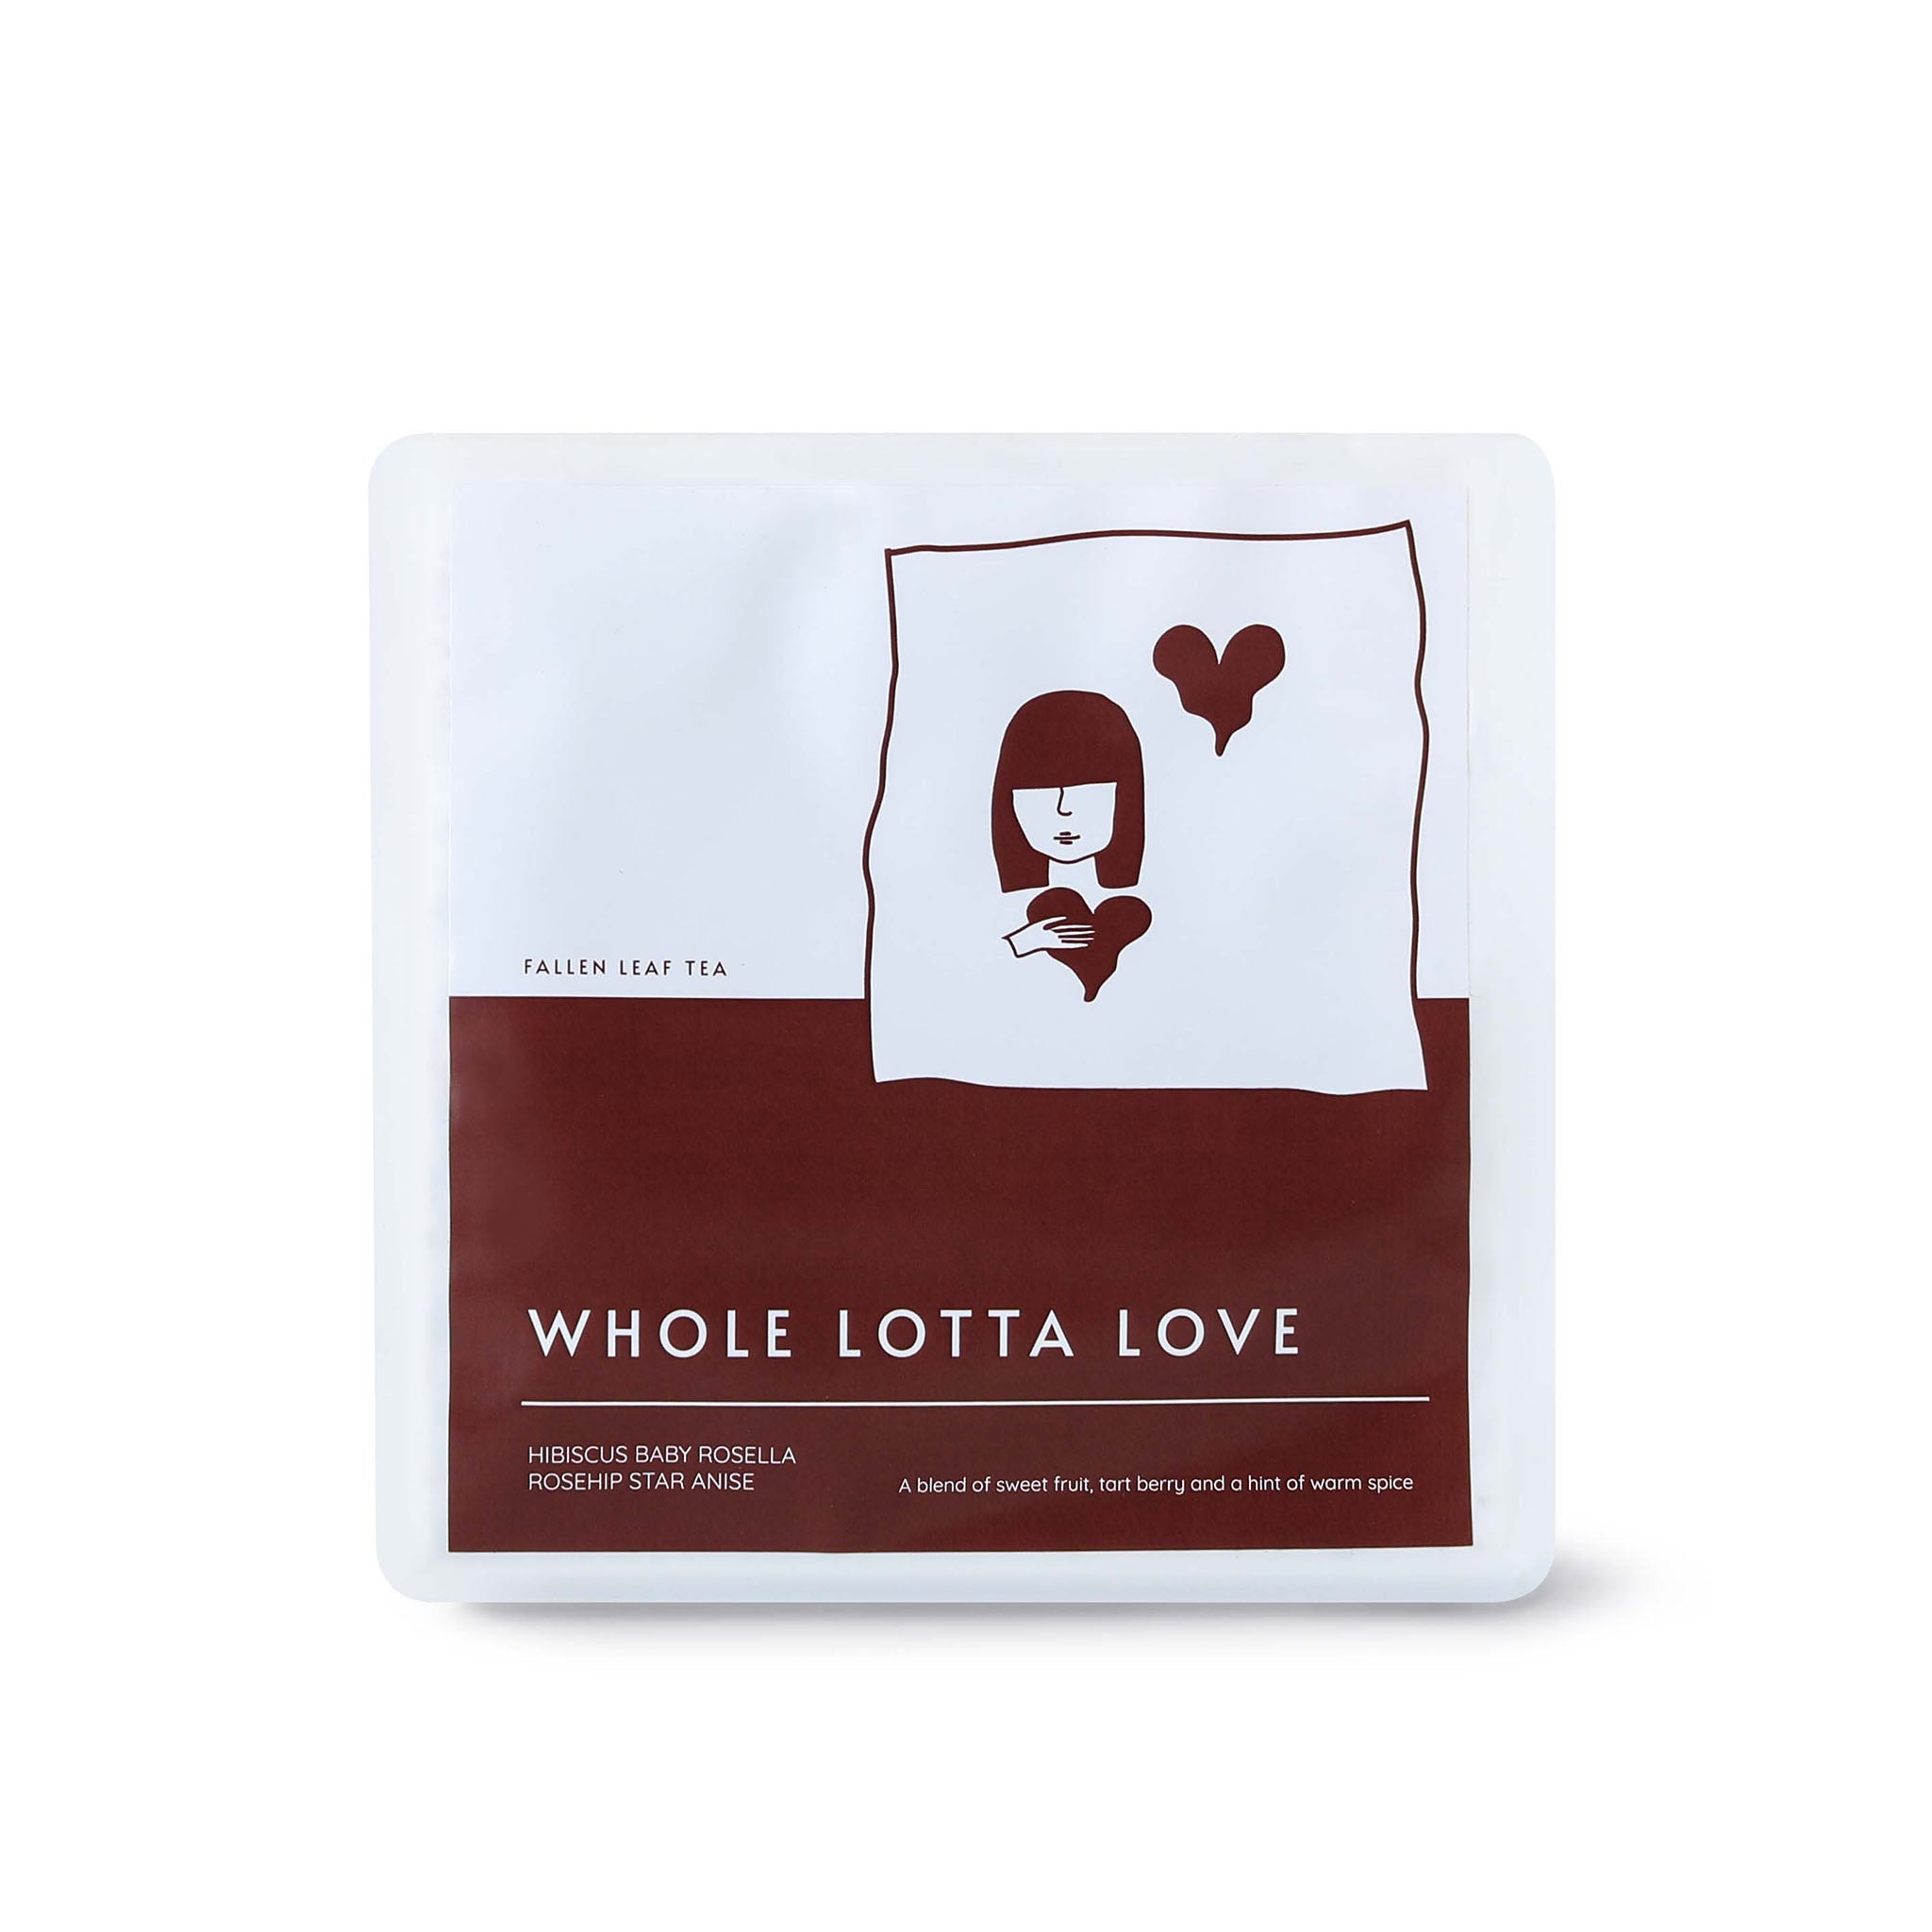 WHOLE LOTTA LOVE – Fallen Leaf Teas